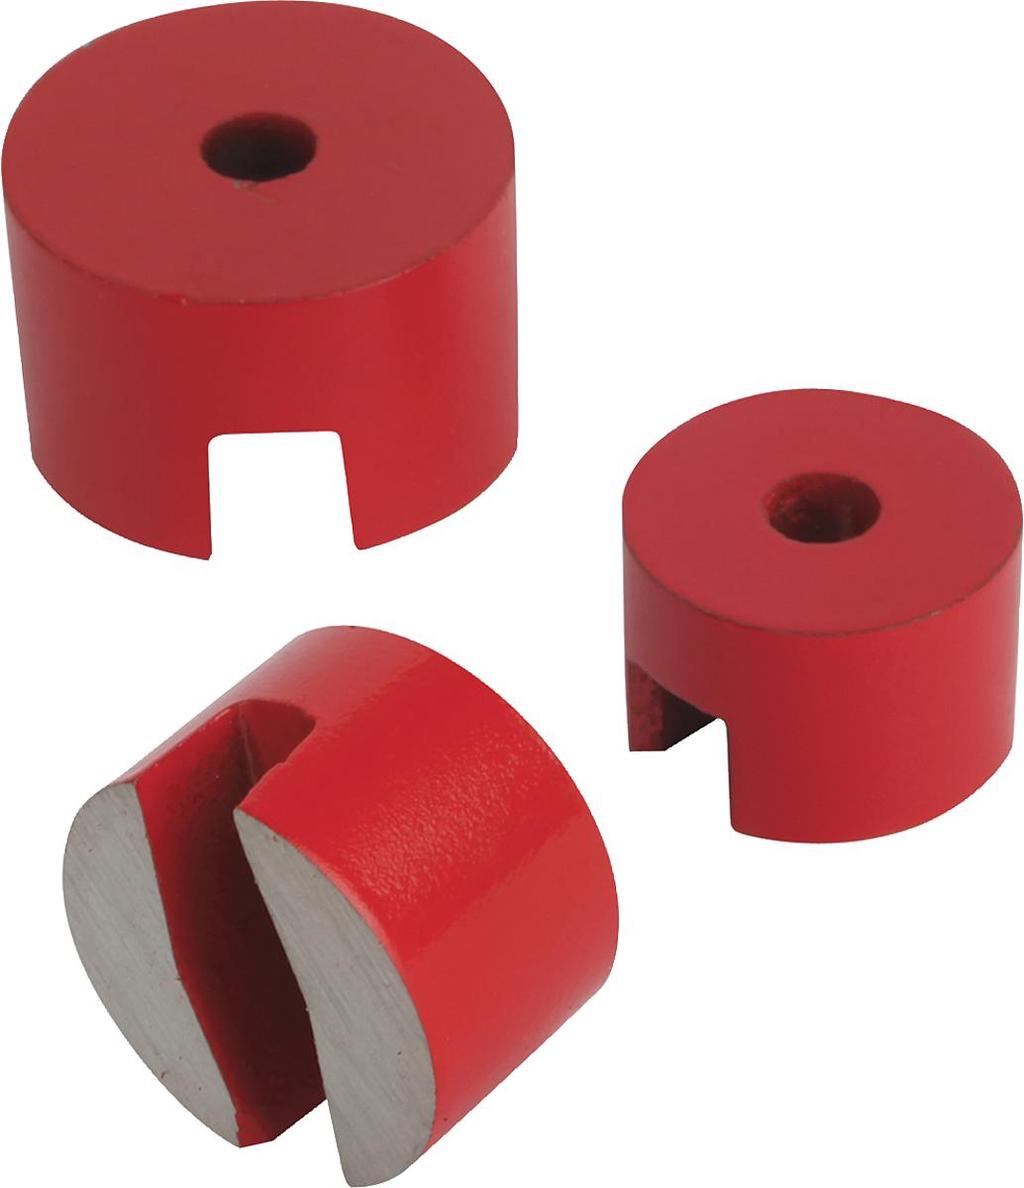 K0559 Mágnesek (gombmágnes) Alapanyag: Mágnesmag, AliCo. vörösre festett. Osztott tapadófelület átmenő rögzítőfurattal. Árnyékolatlan rendszer.